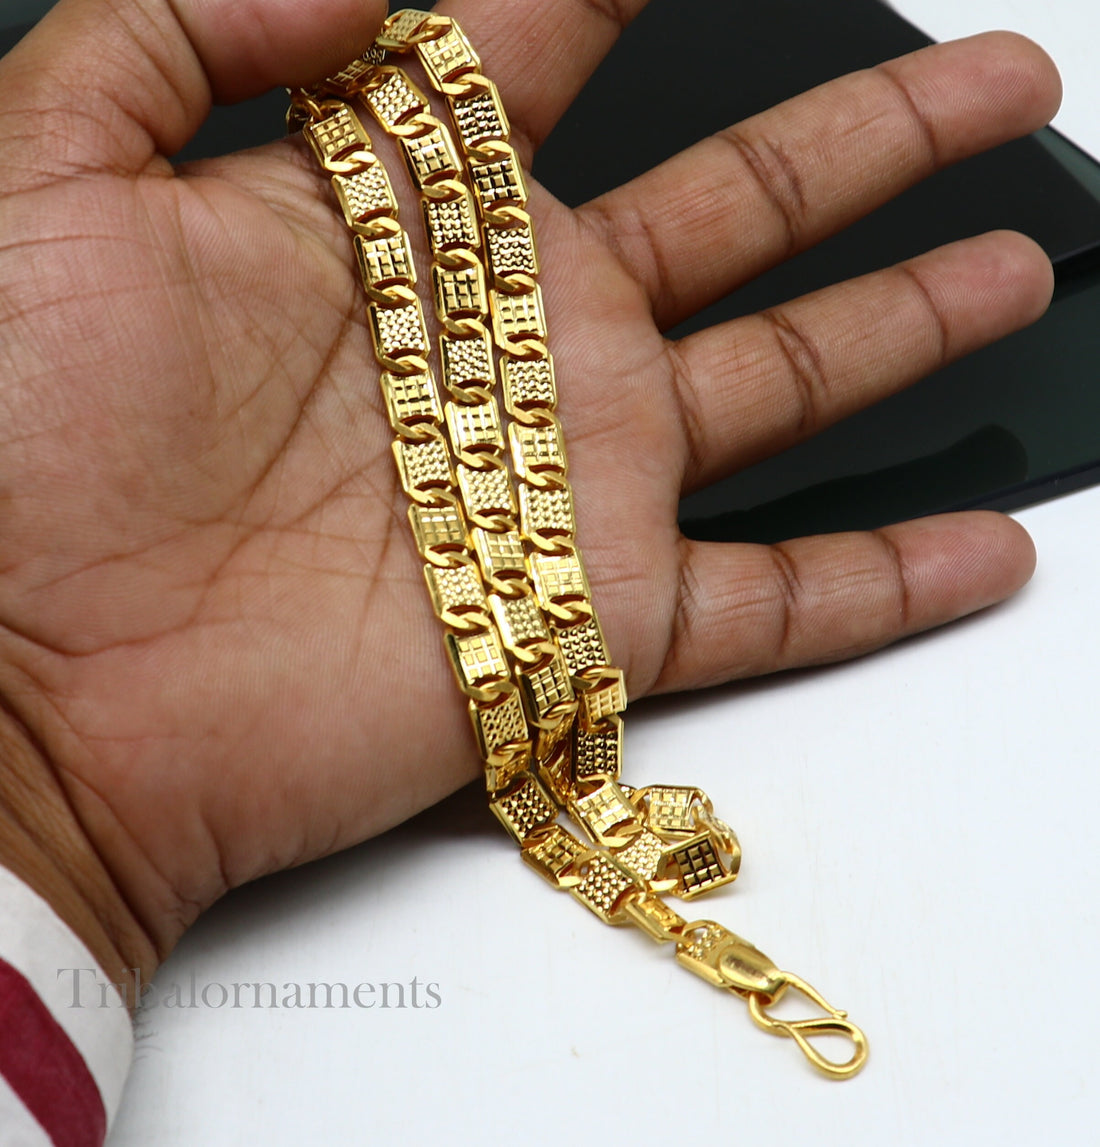 22kt yellow gold royal nawabi baht chain, bar chain, Royal design